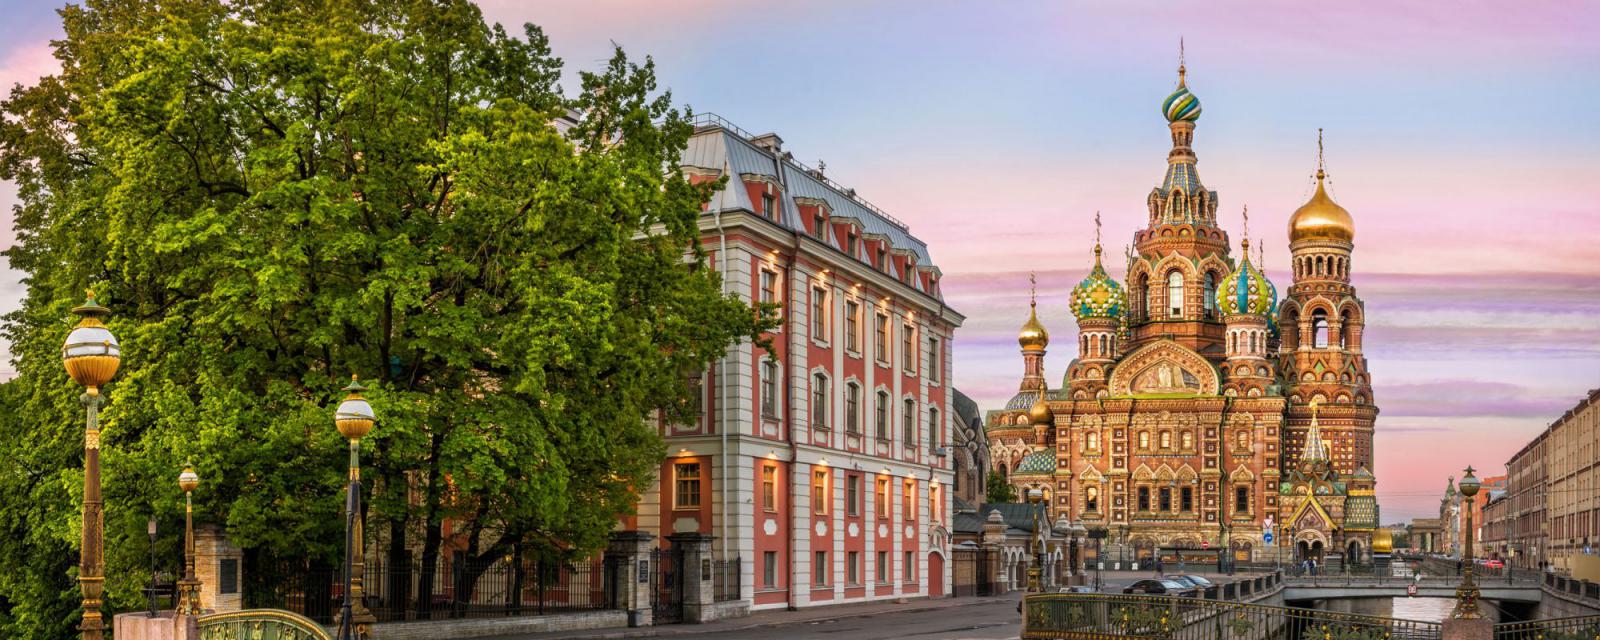 Gezapt: Sint-Petersburg | Inspiratie voor jouw stedentrip 